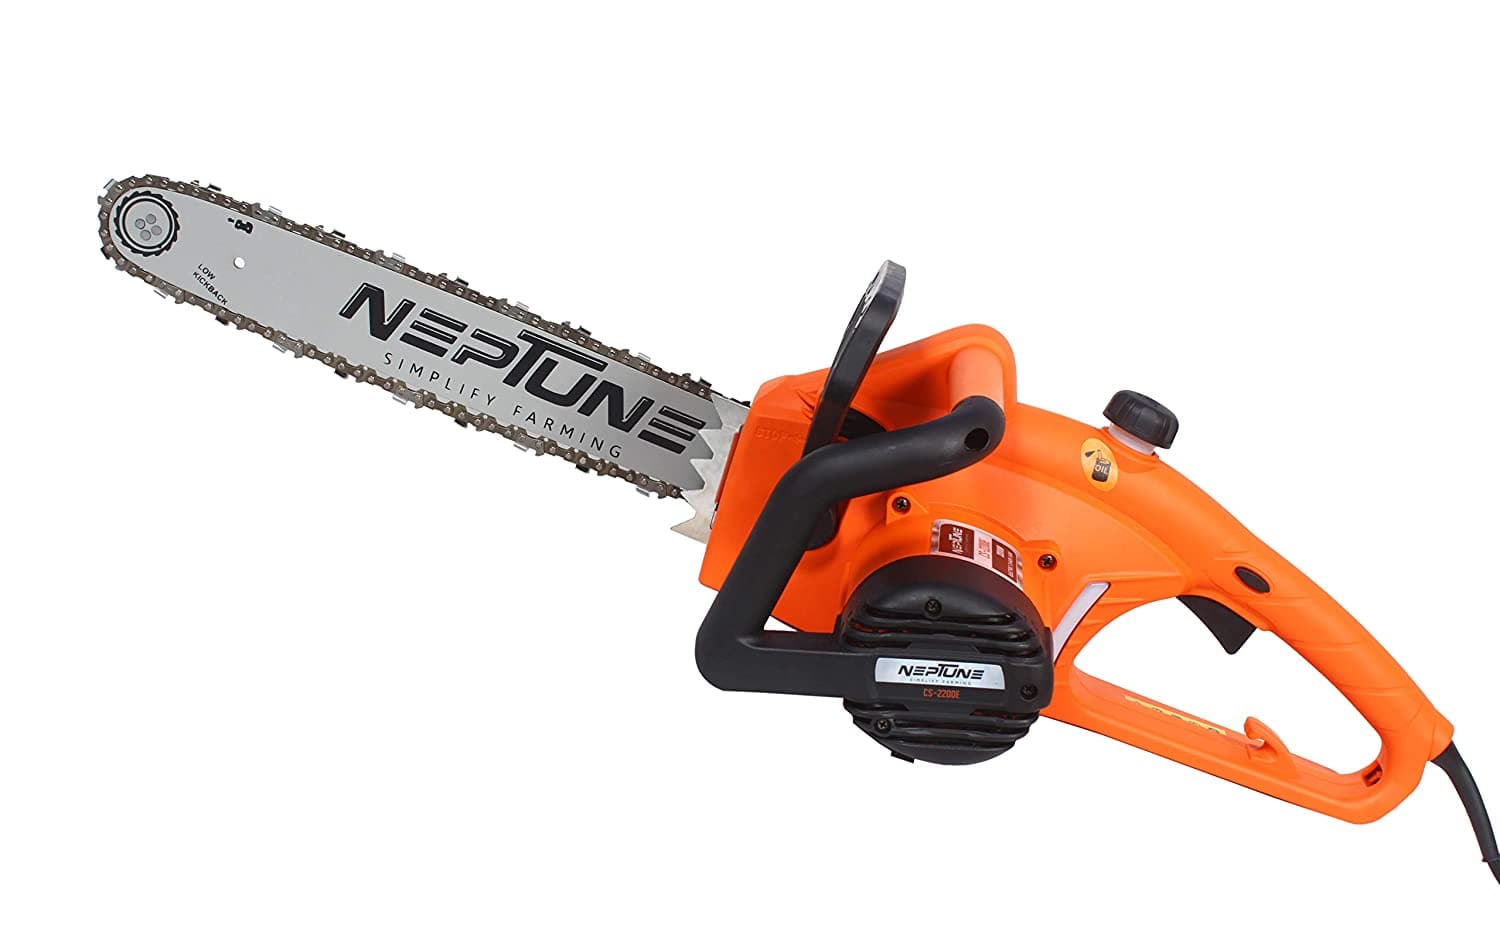 Neptune Simplify Electric Chain Saw (16" Cutting Bar, 2200 Watt)